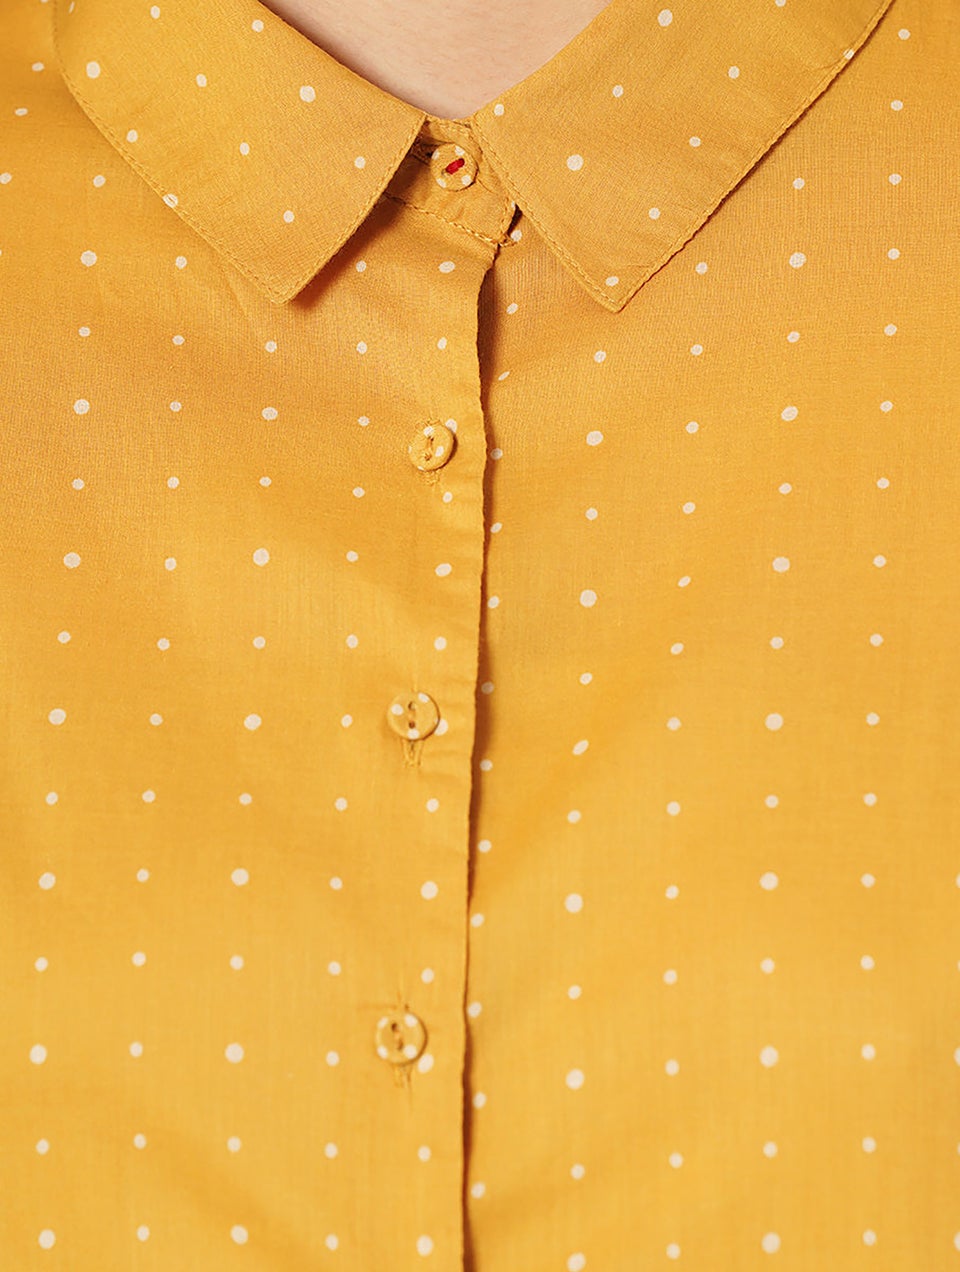 Women Mustard Button-Down Discharge Print Cotton Kurta Dress - XS